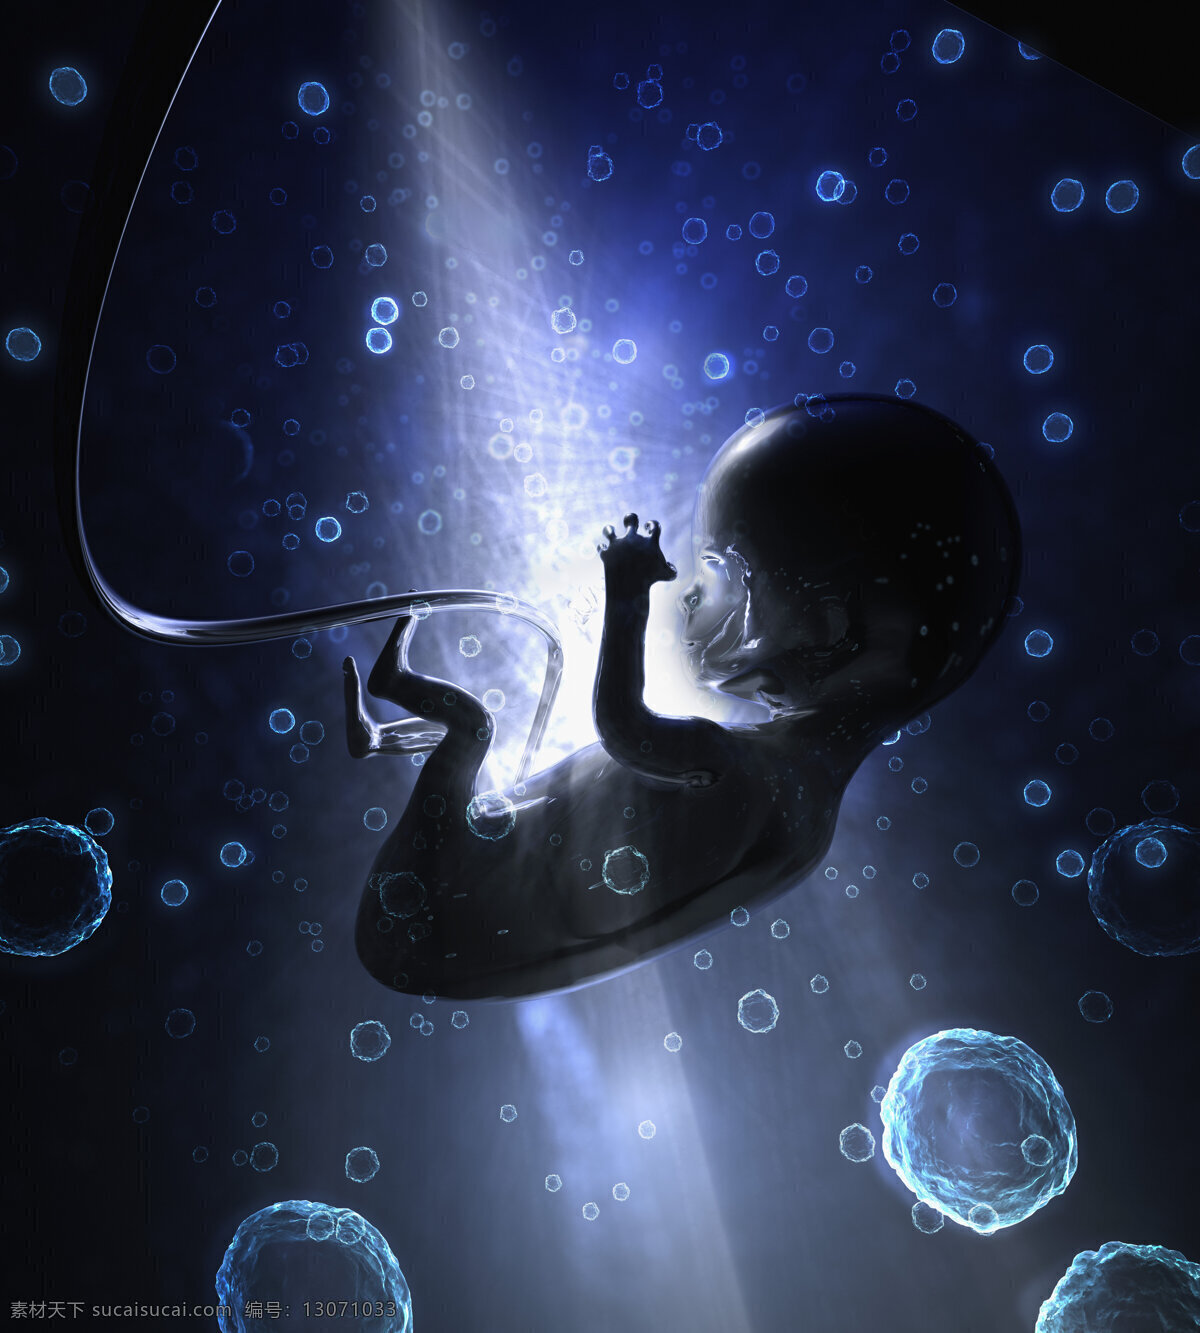 未来 科技 婴儿 海报 未来科技 高科技 科技海报 生命 孕育 梦幻背景 气泡 抽象 创意 高清图片 其他类别 现代科技